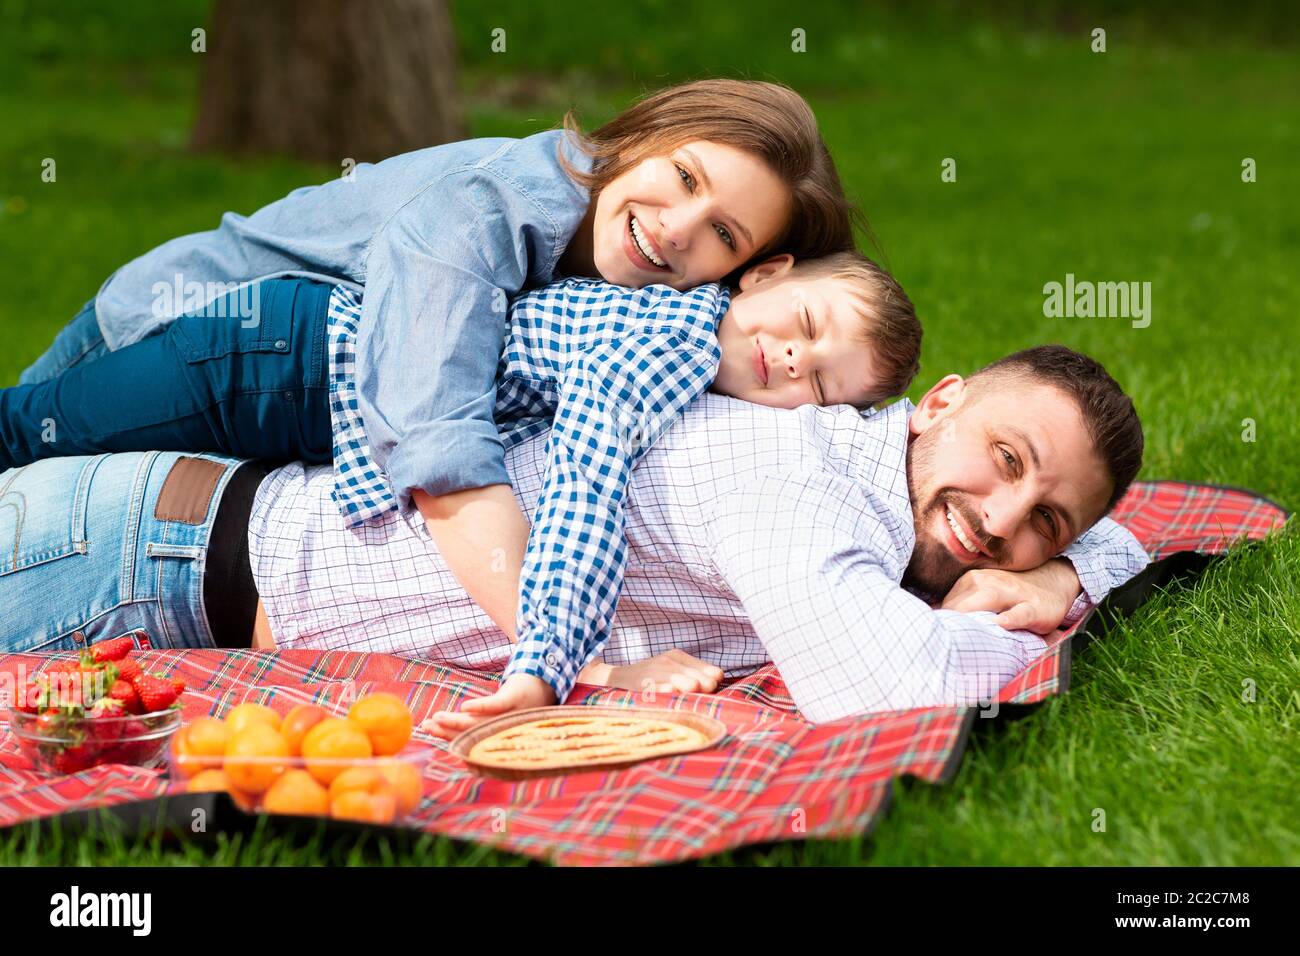 Famille joyeuse avec enfant allongé sur une couverture de pique-nique dans un pré vert Banque D'Images